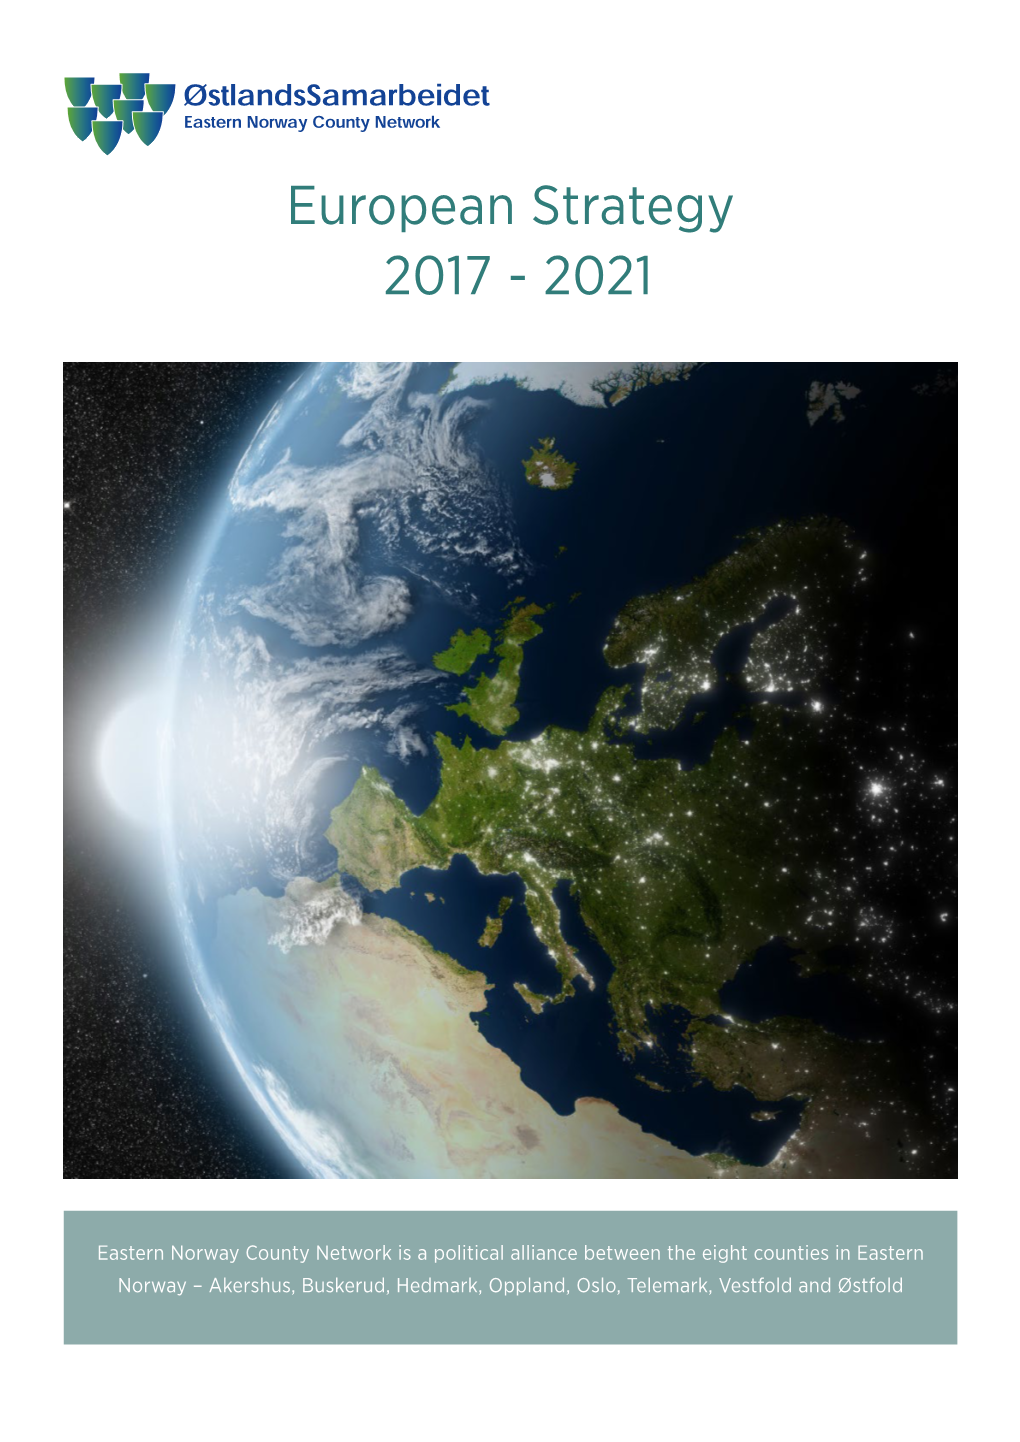 European Strategy 2017 - 2021